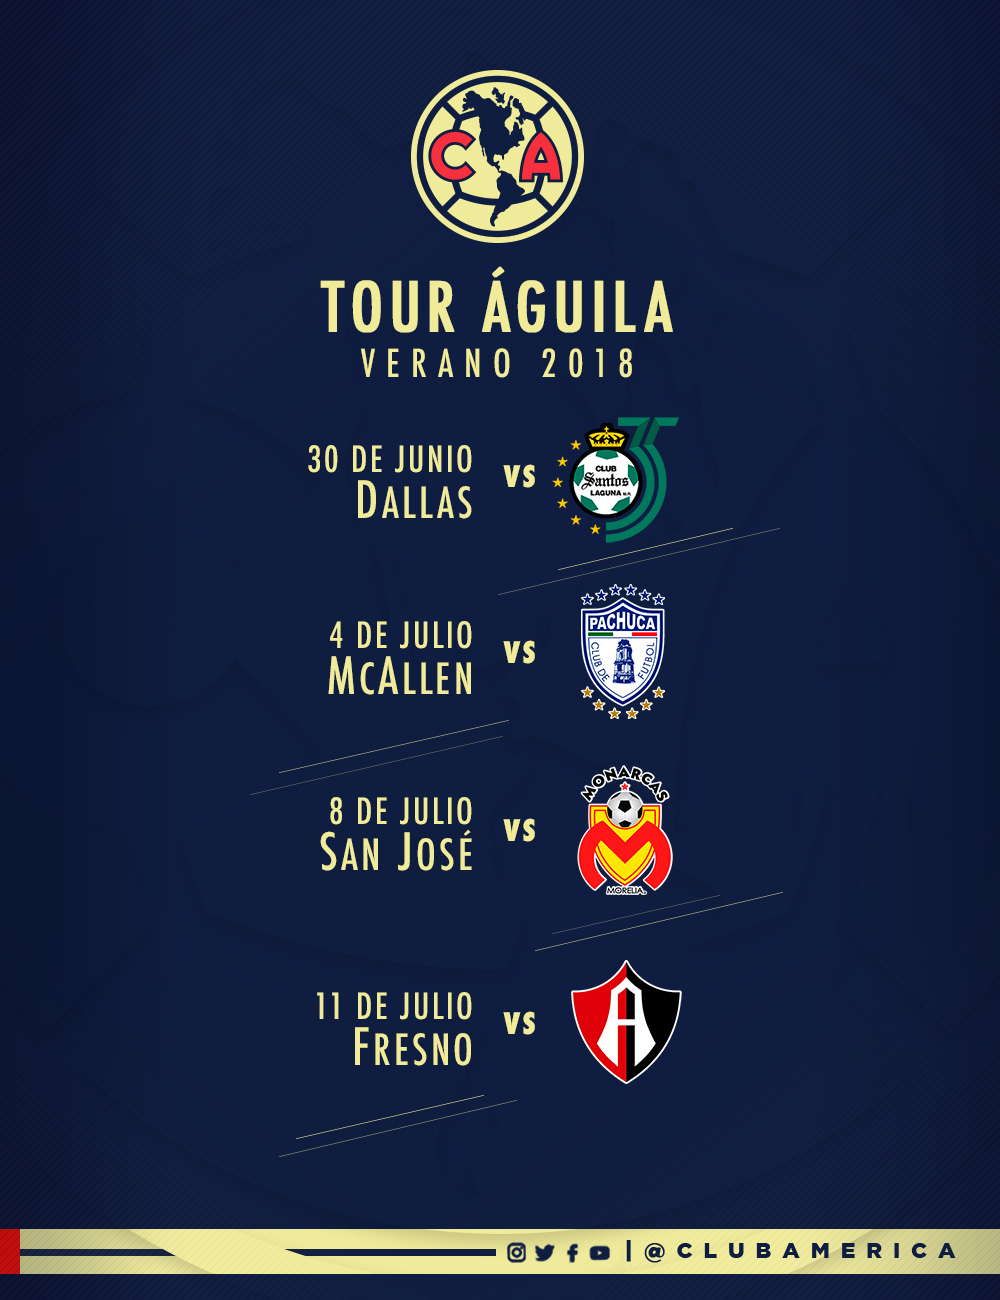 Tour Águila - Verano 2018 * Club América - Sitio Oficial